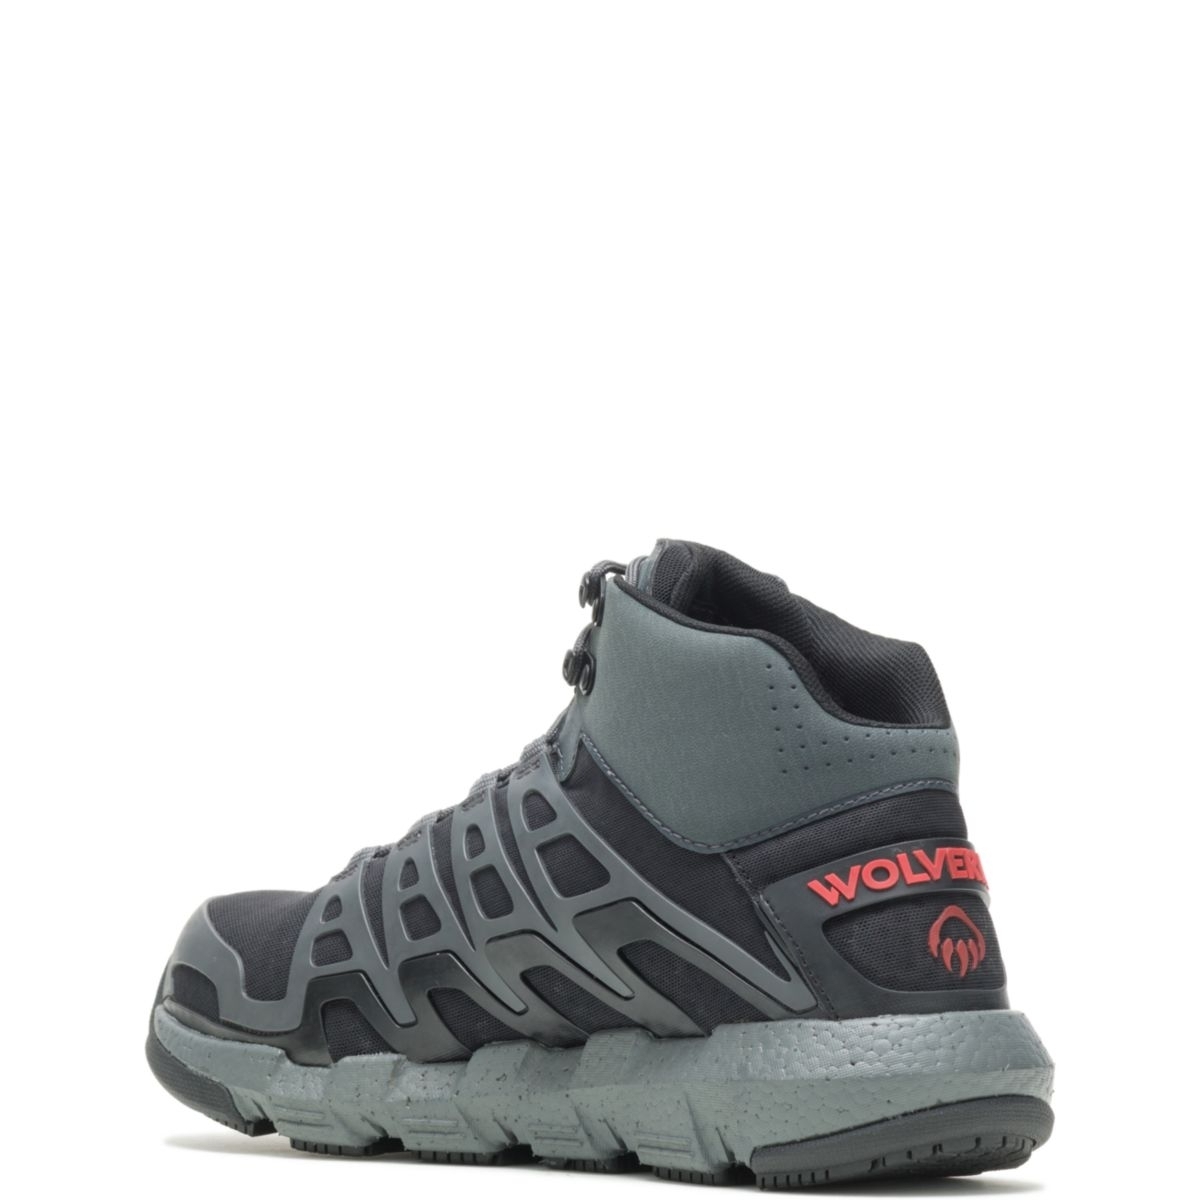 WOLVERINE Men's Rev Vent UltraSpringâ¢ DuraShocksÂ® CarbonMAXÂ® Composite Toe Work Boot Charcoal/Red - W211018 Charcoal/Red - Charcoal/Red, 11